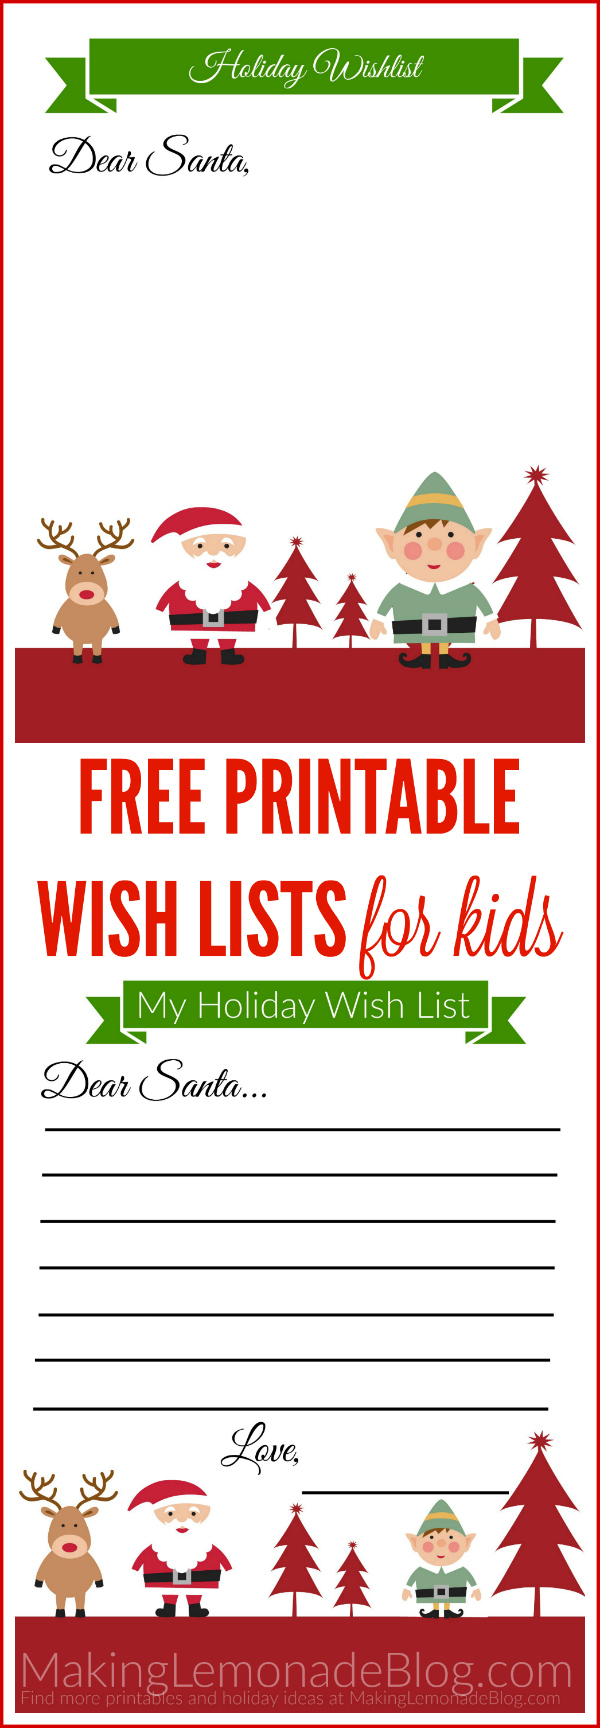 Free Printable Holiday Wish List For Kids - Free Printable Christmas List